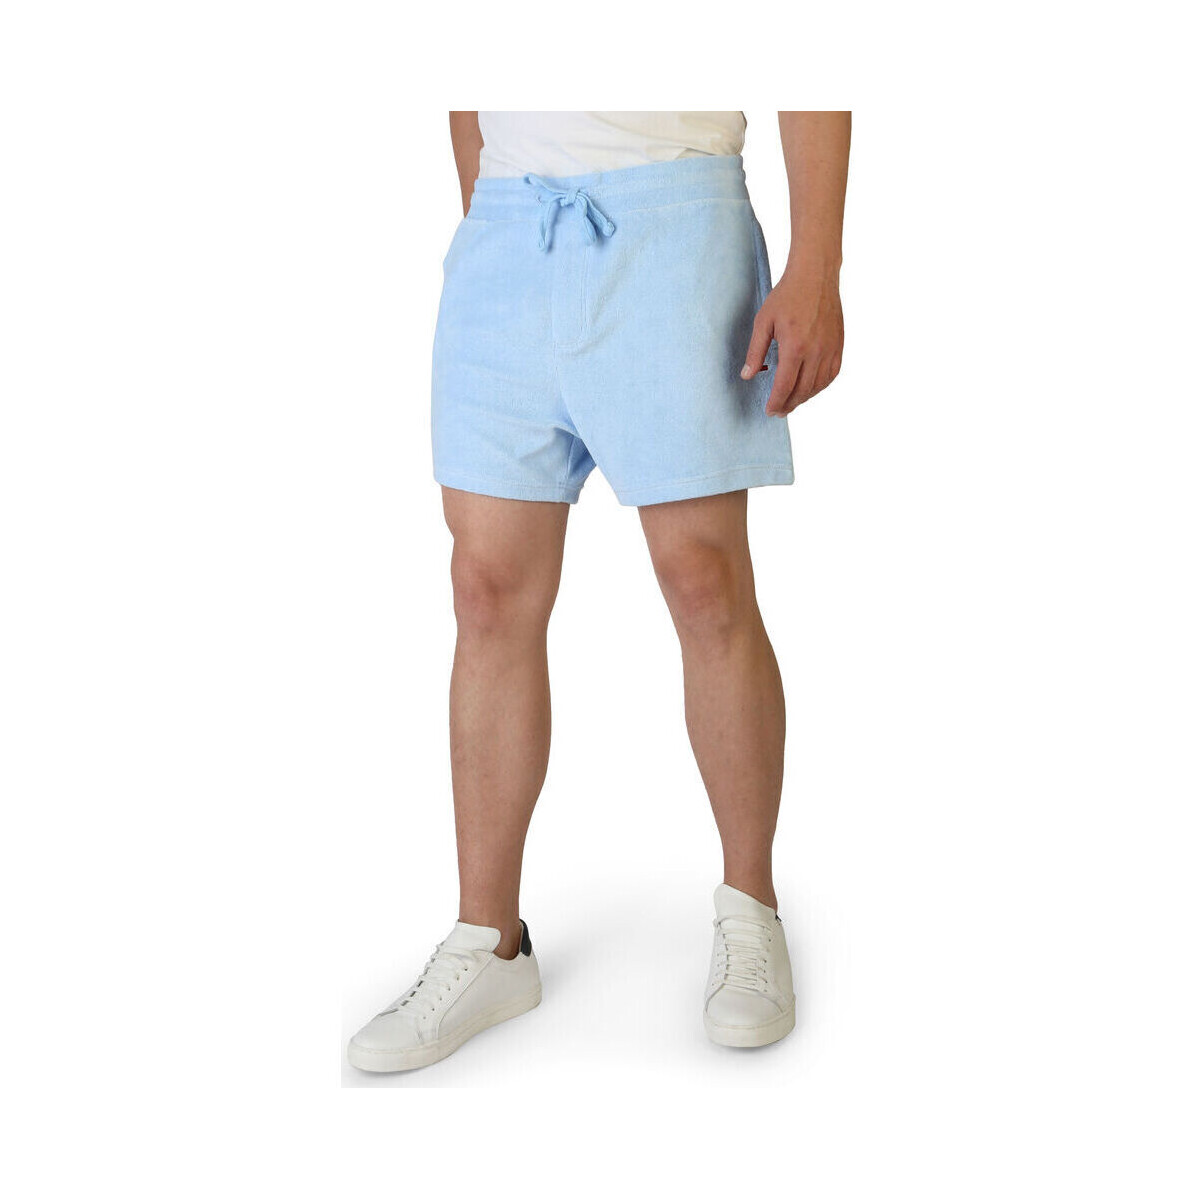 Îmbracaminte Bărbați Pantaloni scurti și Bermuda Tommy Hilfiger - dm0dm11521 albastru